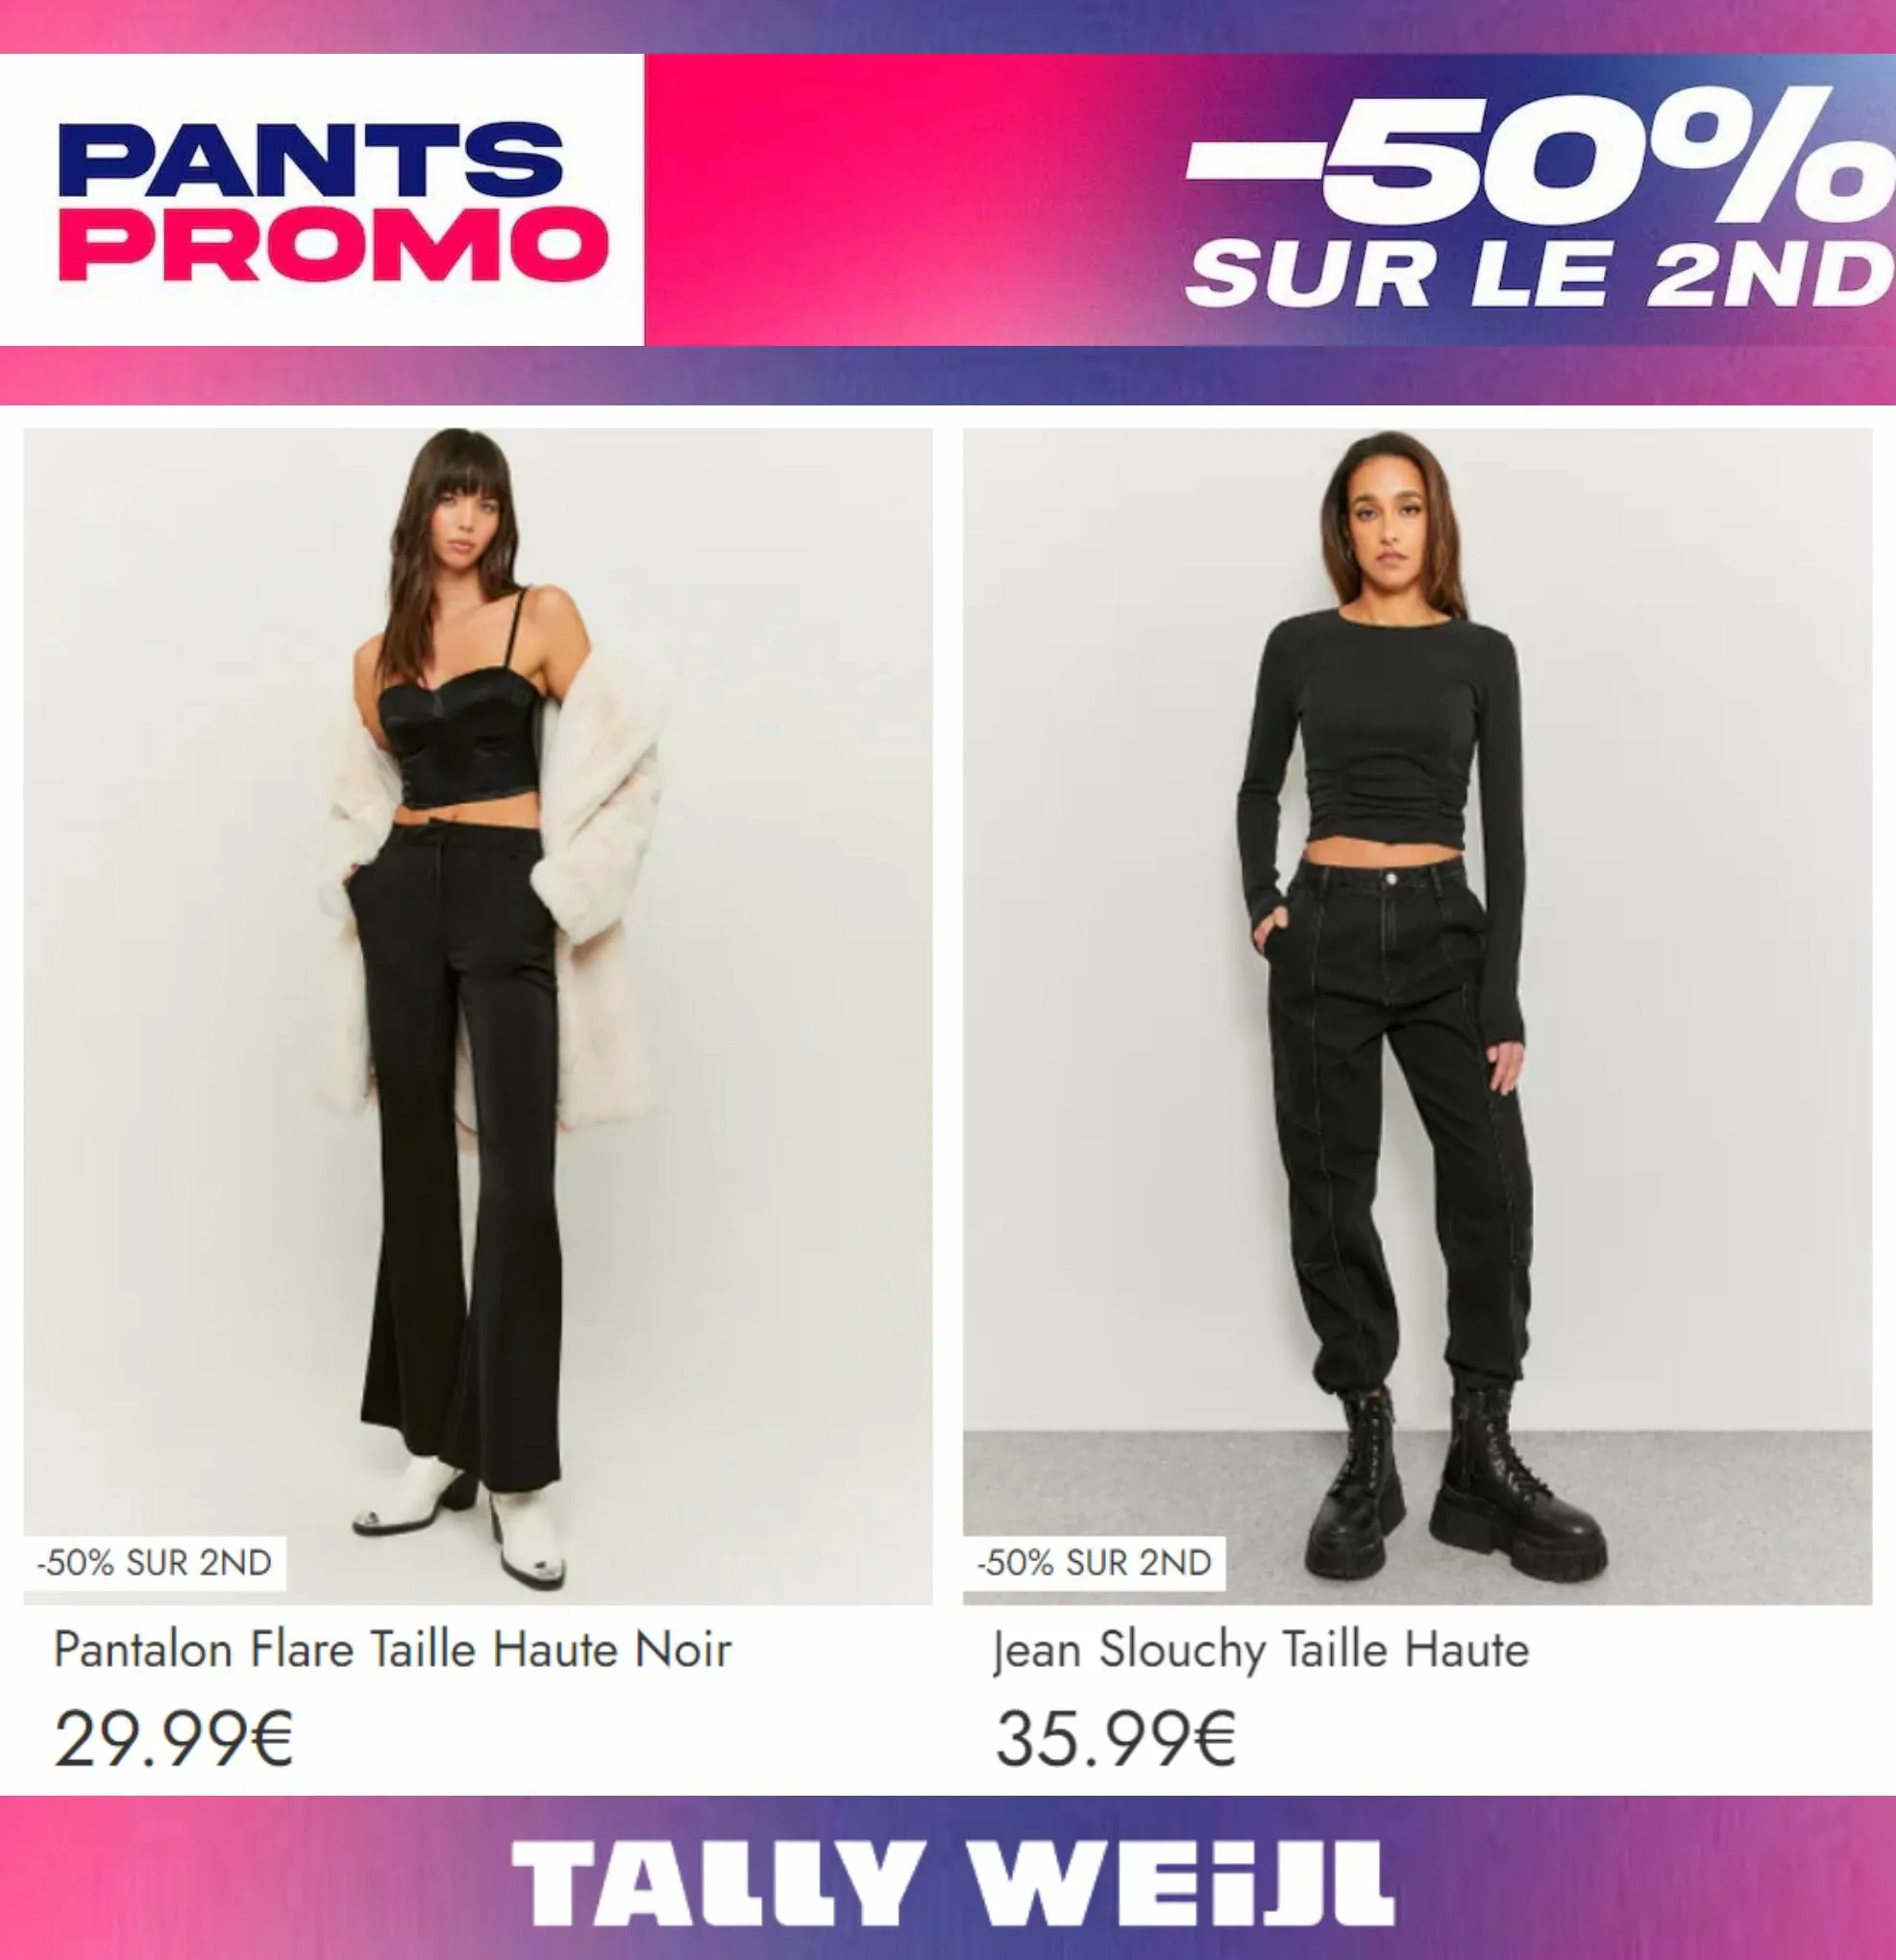 Catalogue Pants Promo -50% sur le 2nd*, page 00002